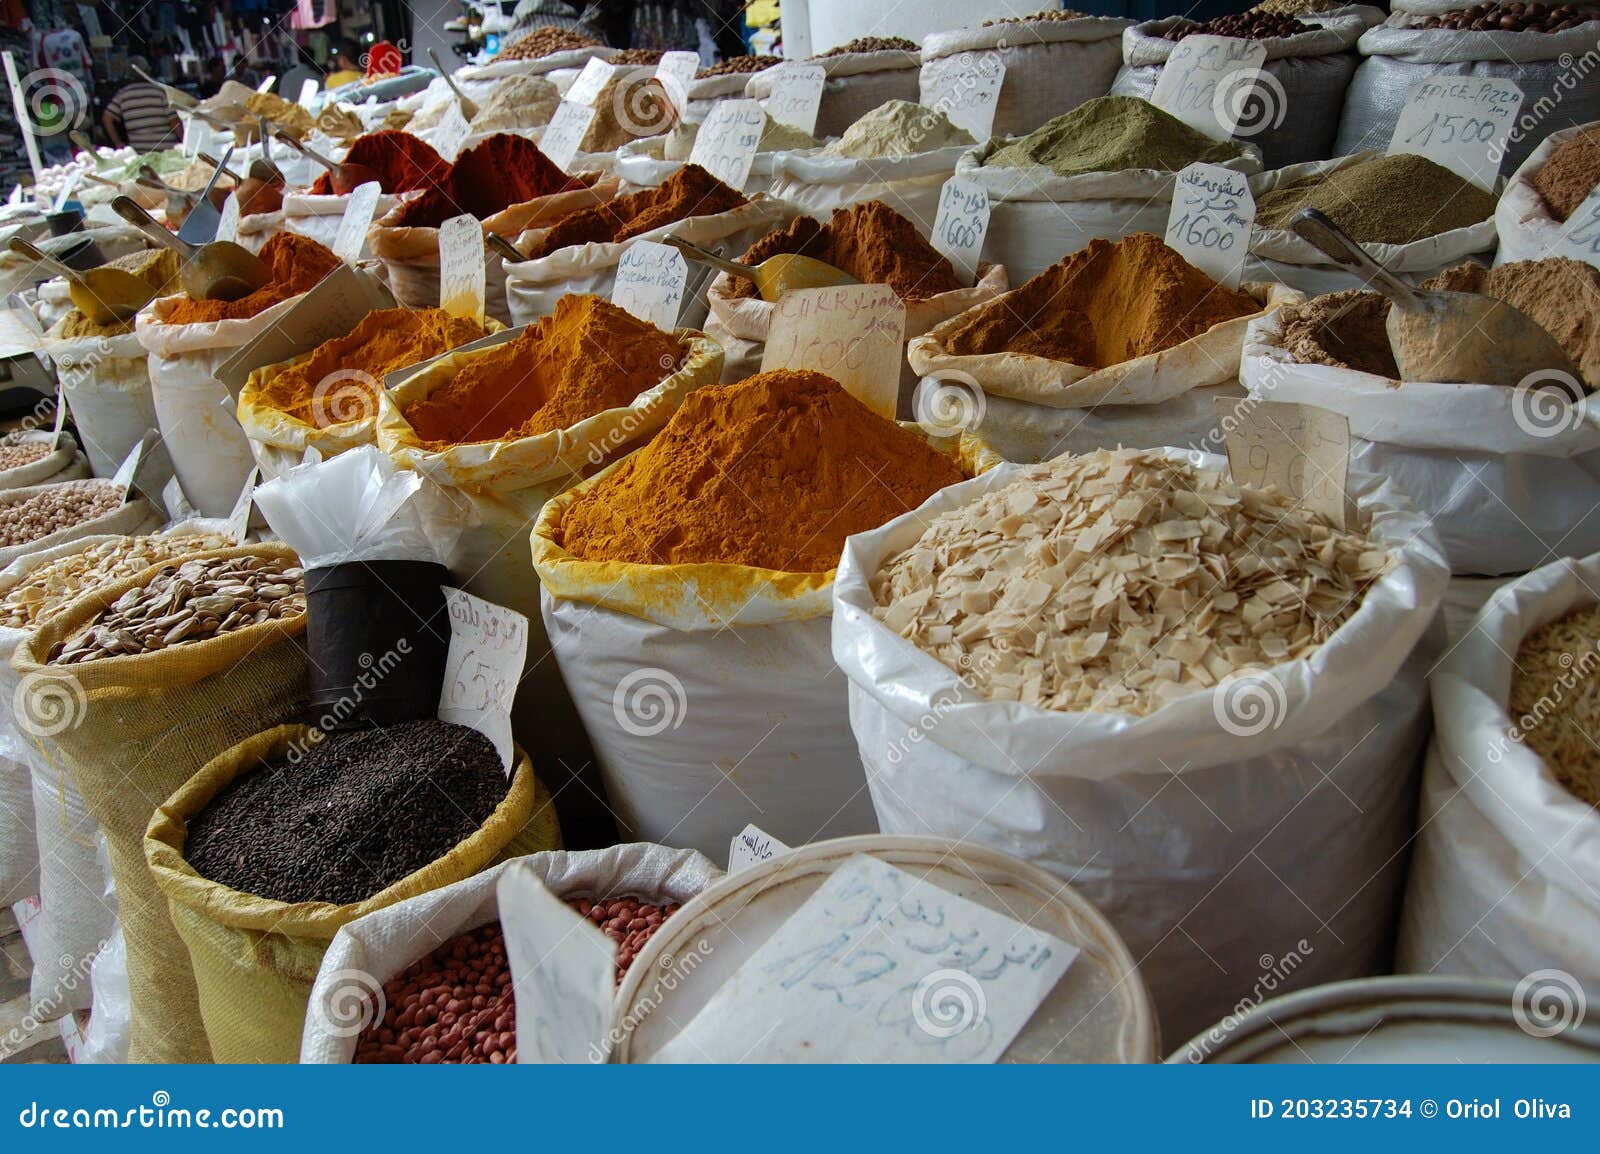 spices market in tunisia